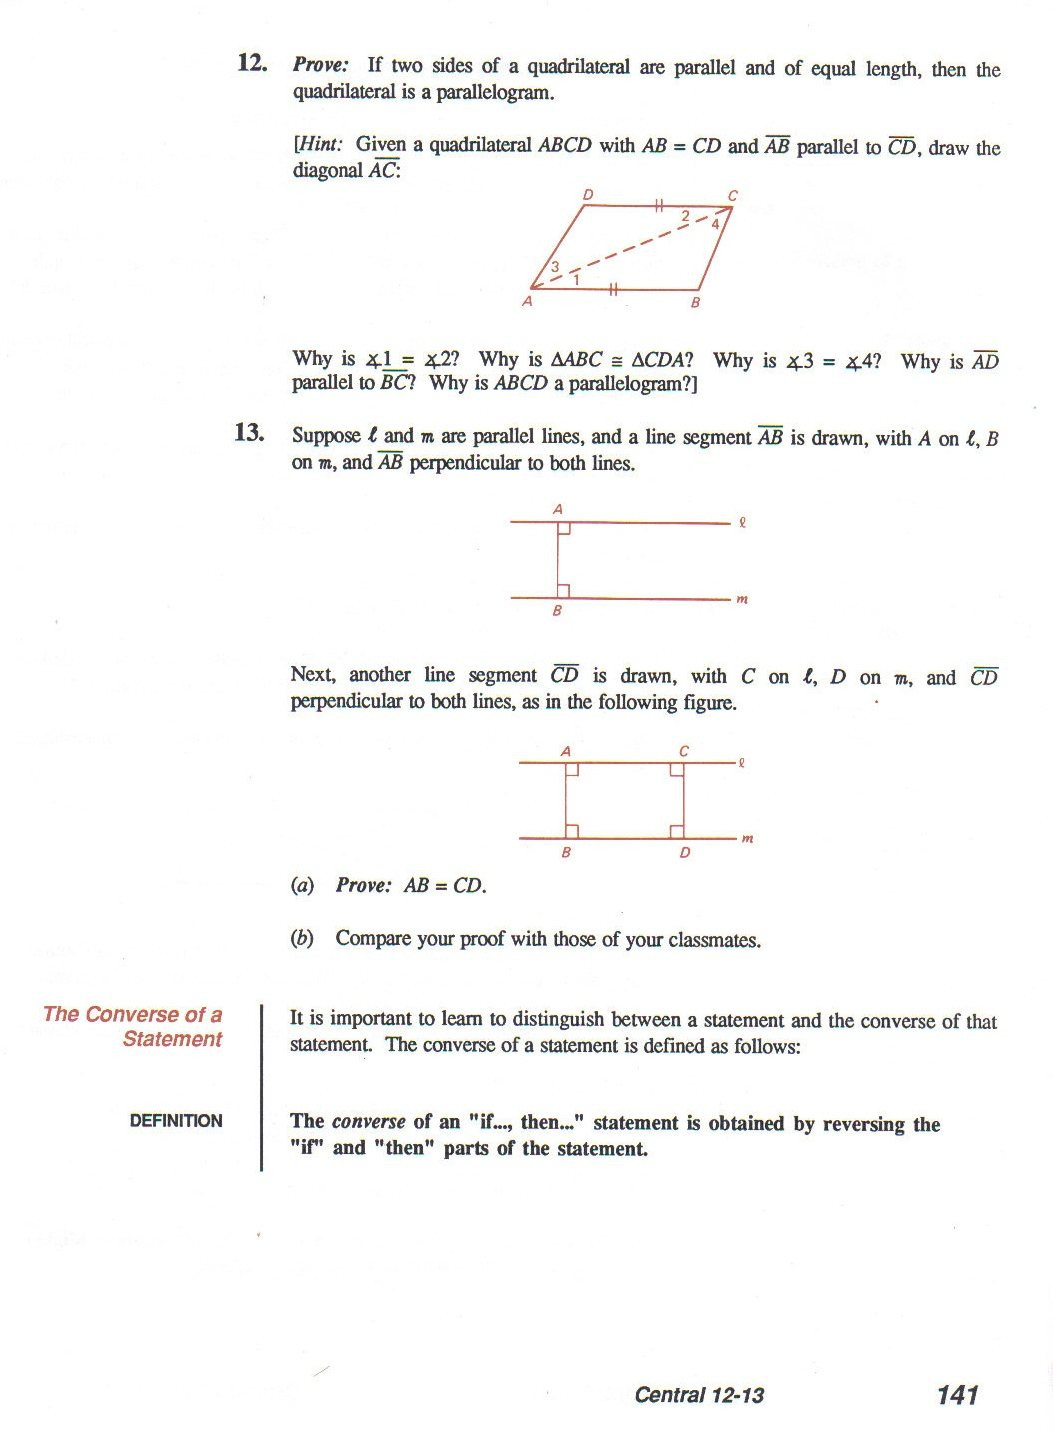 Geometry Worksheet Beginning Proofs Geometry Worksheet Beginning Proofs Answers